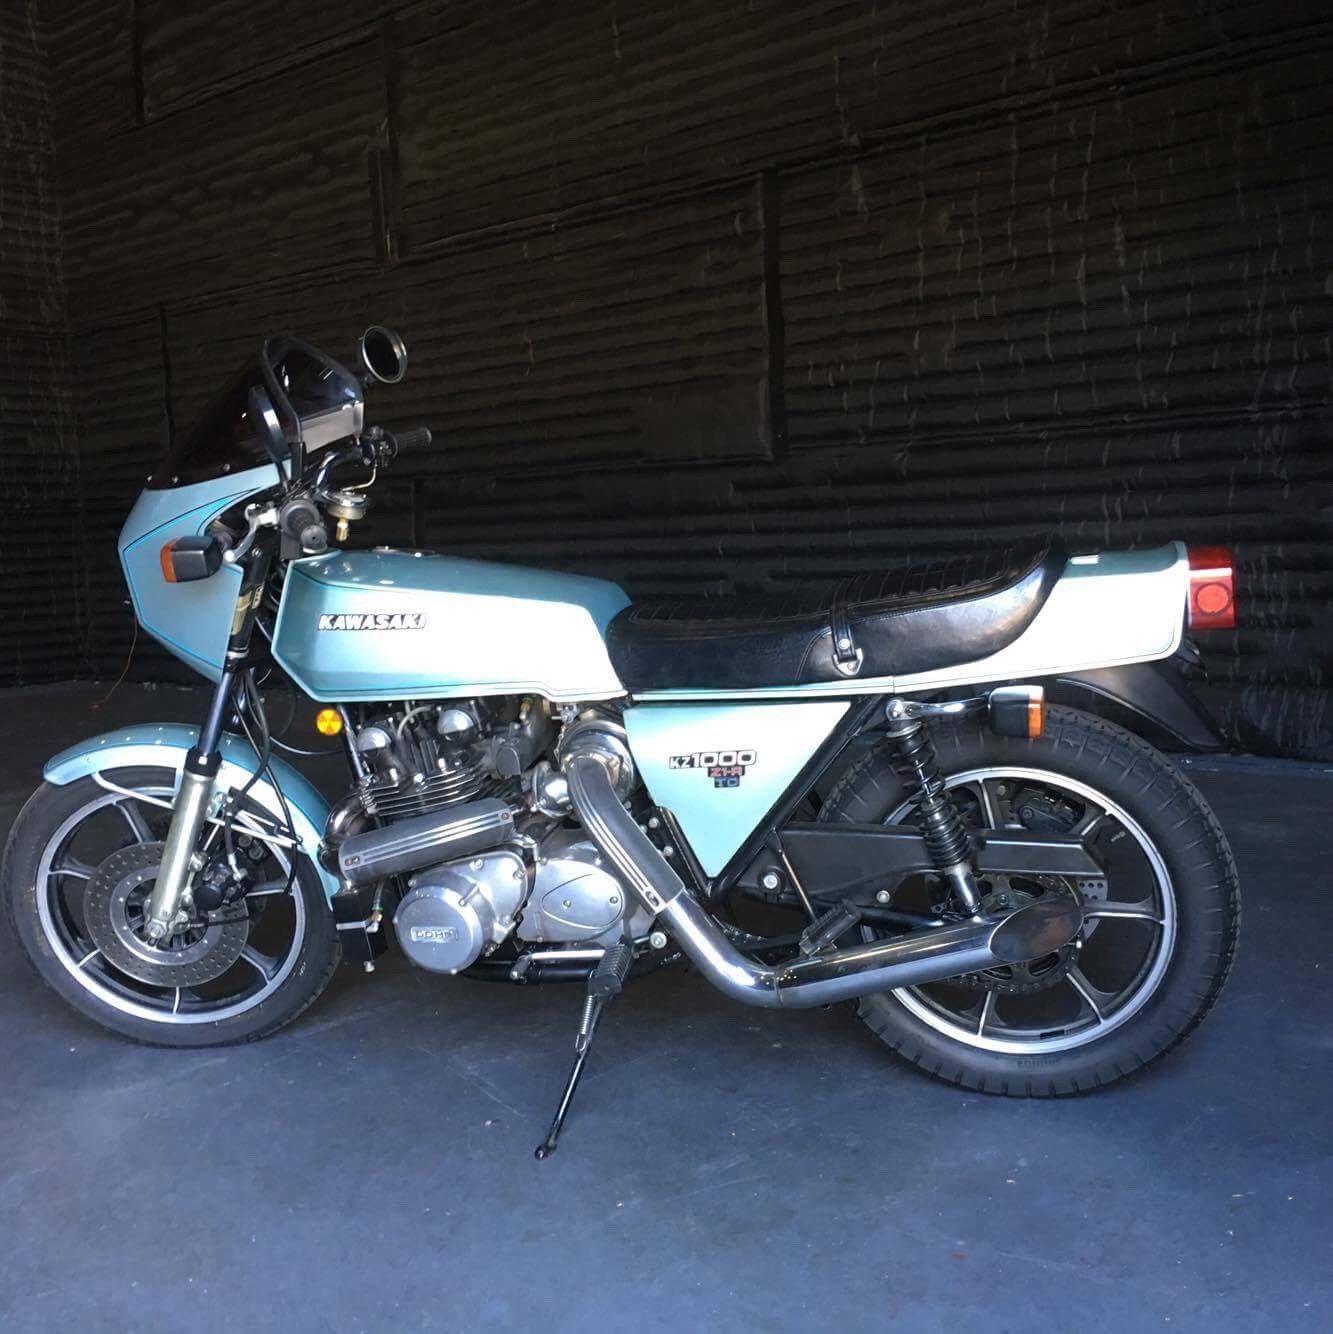 Motocyclettes Kawasaki : Top 5 des modèles les plus chers vendus sur eBay